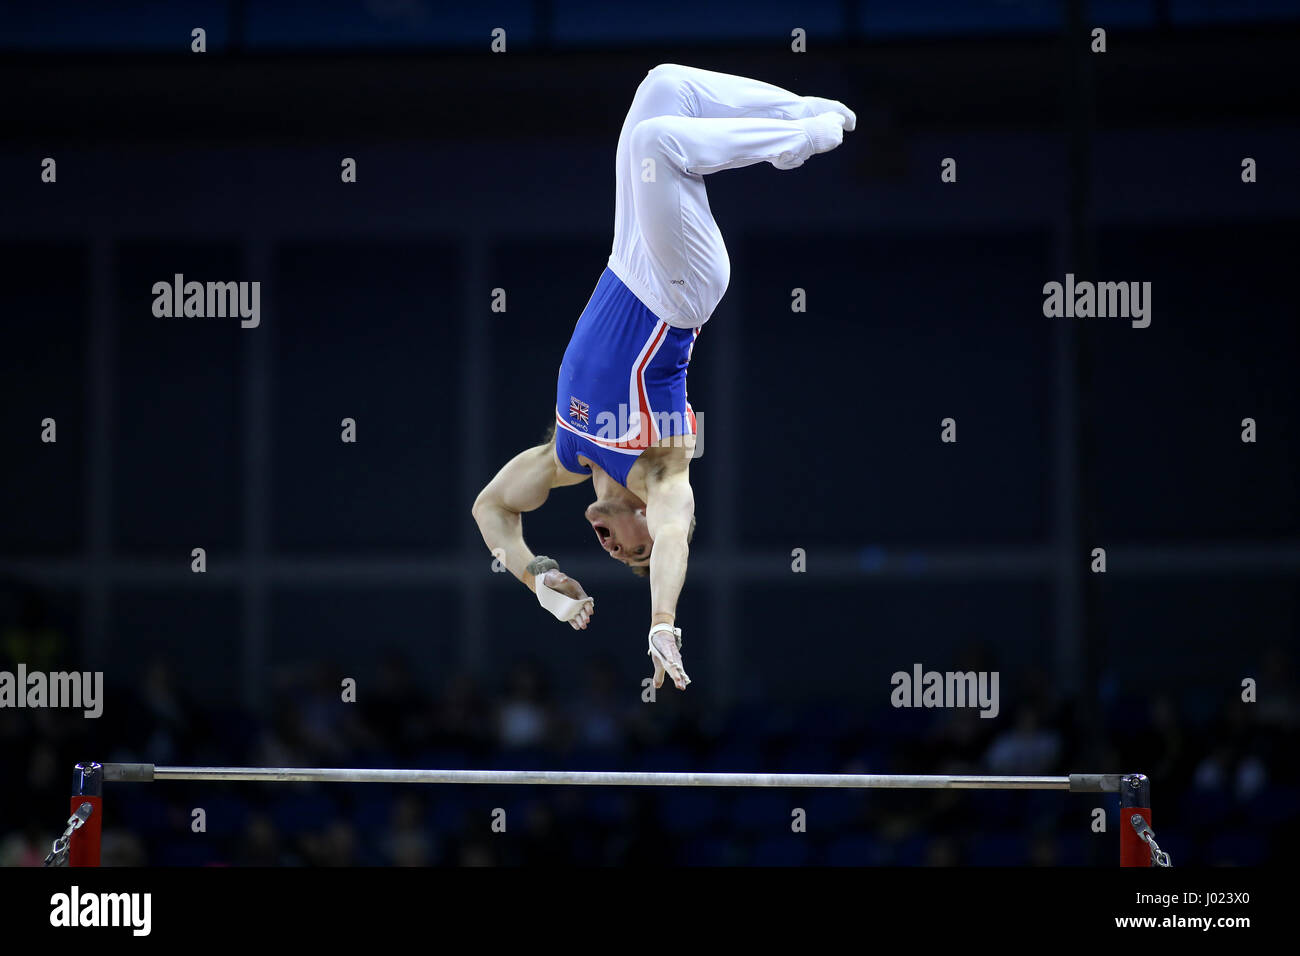 Der Brite Sam Oldham konkurriert in der horizontalen Leiste während der World Cup Gymnastik in The O2, London. Stockfoto